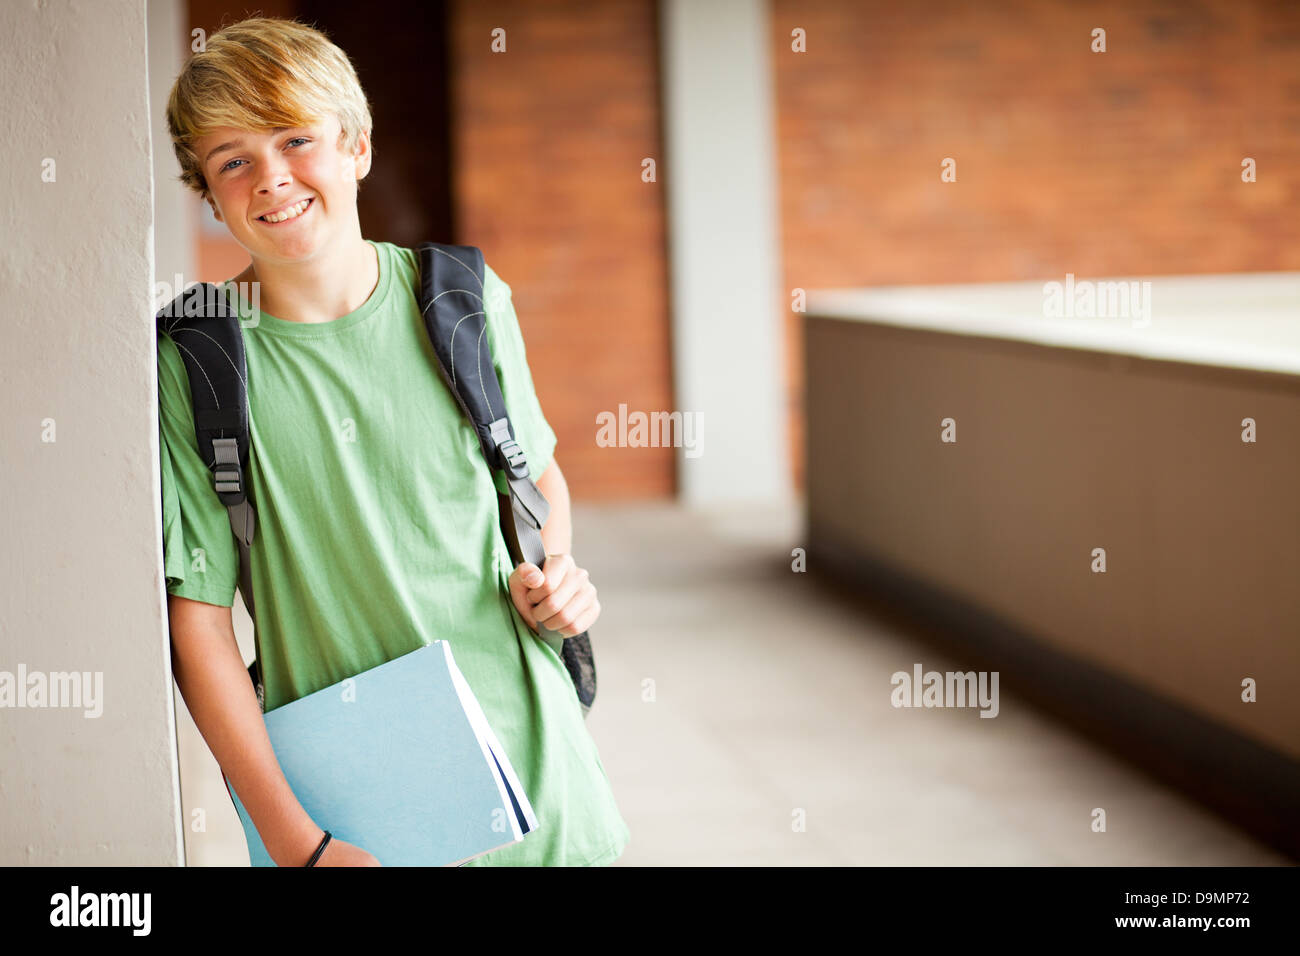 cute high school boy portrait in school Stock Photo